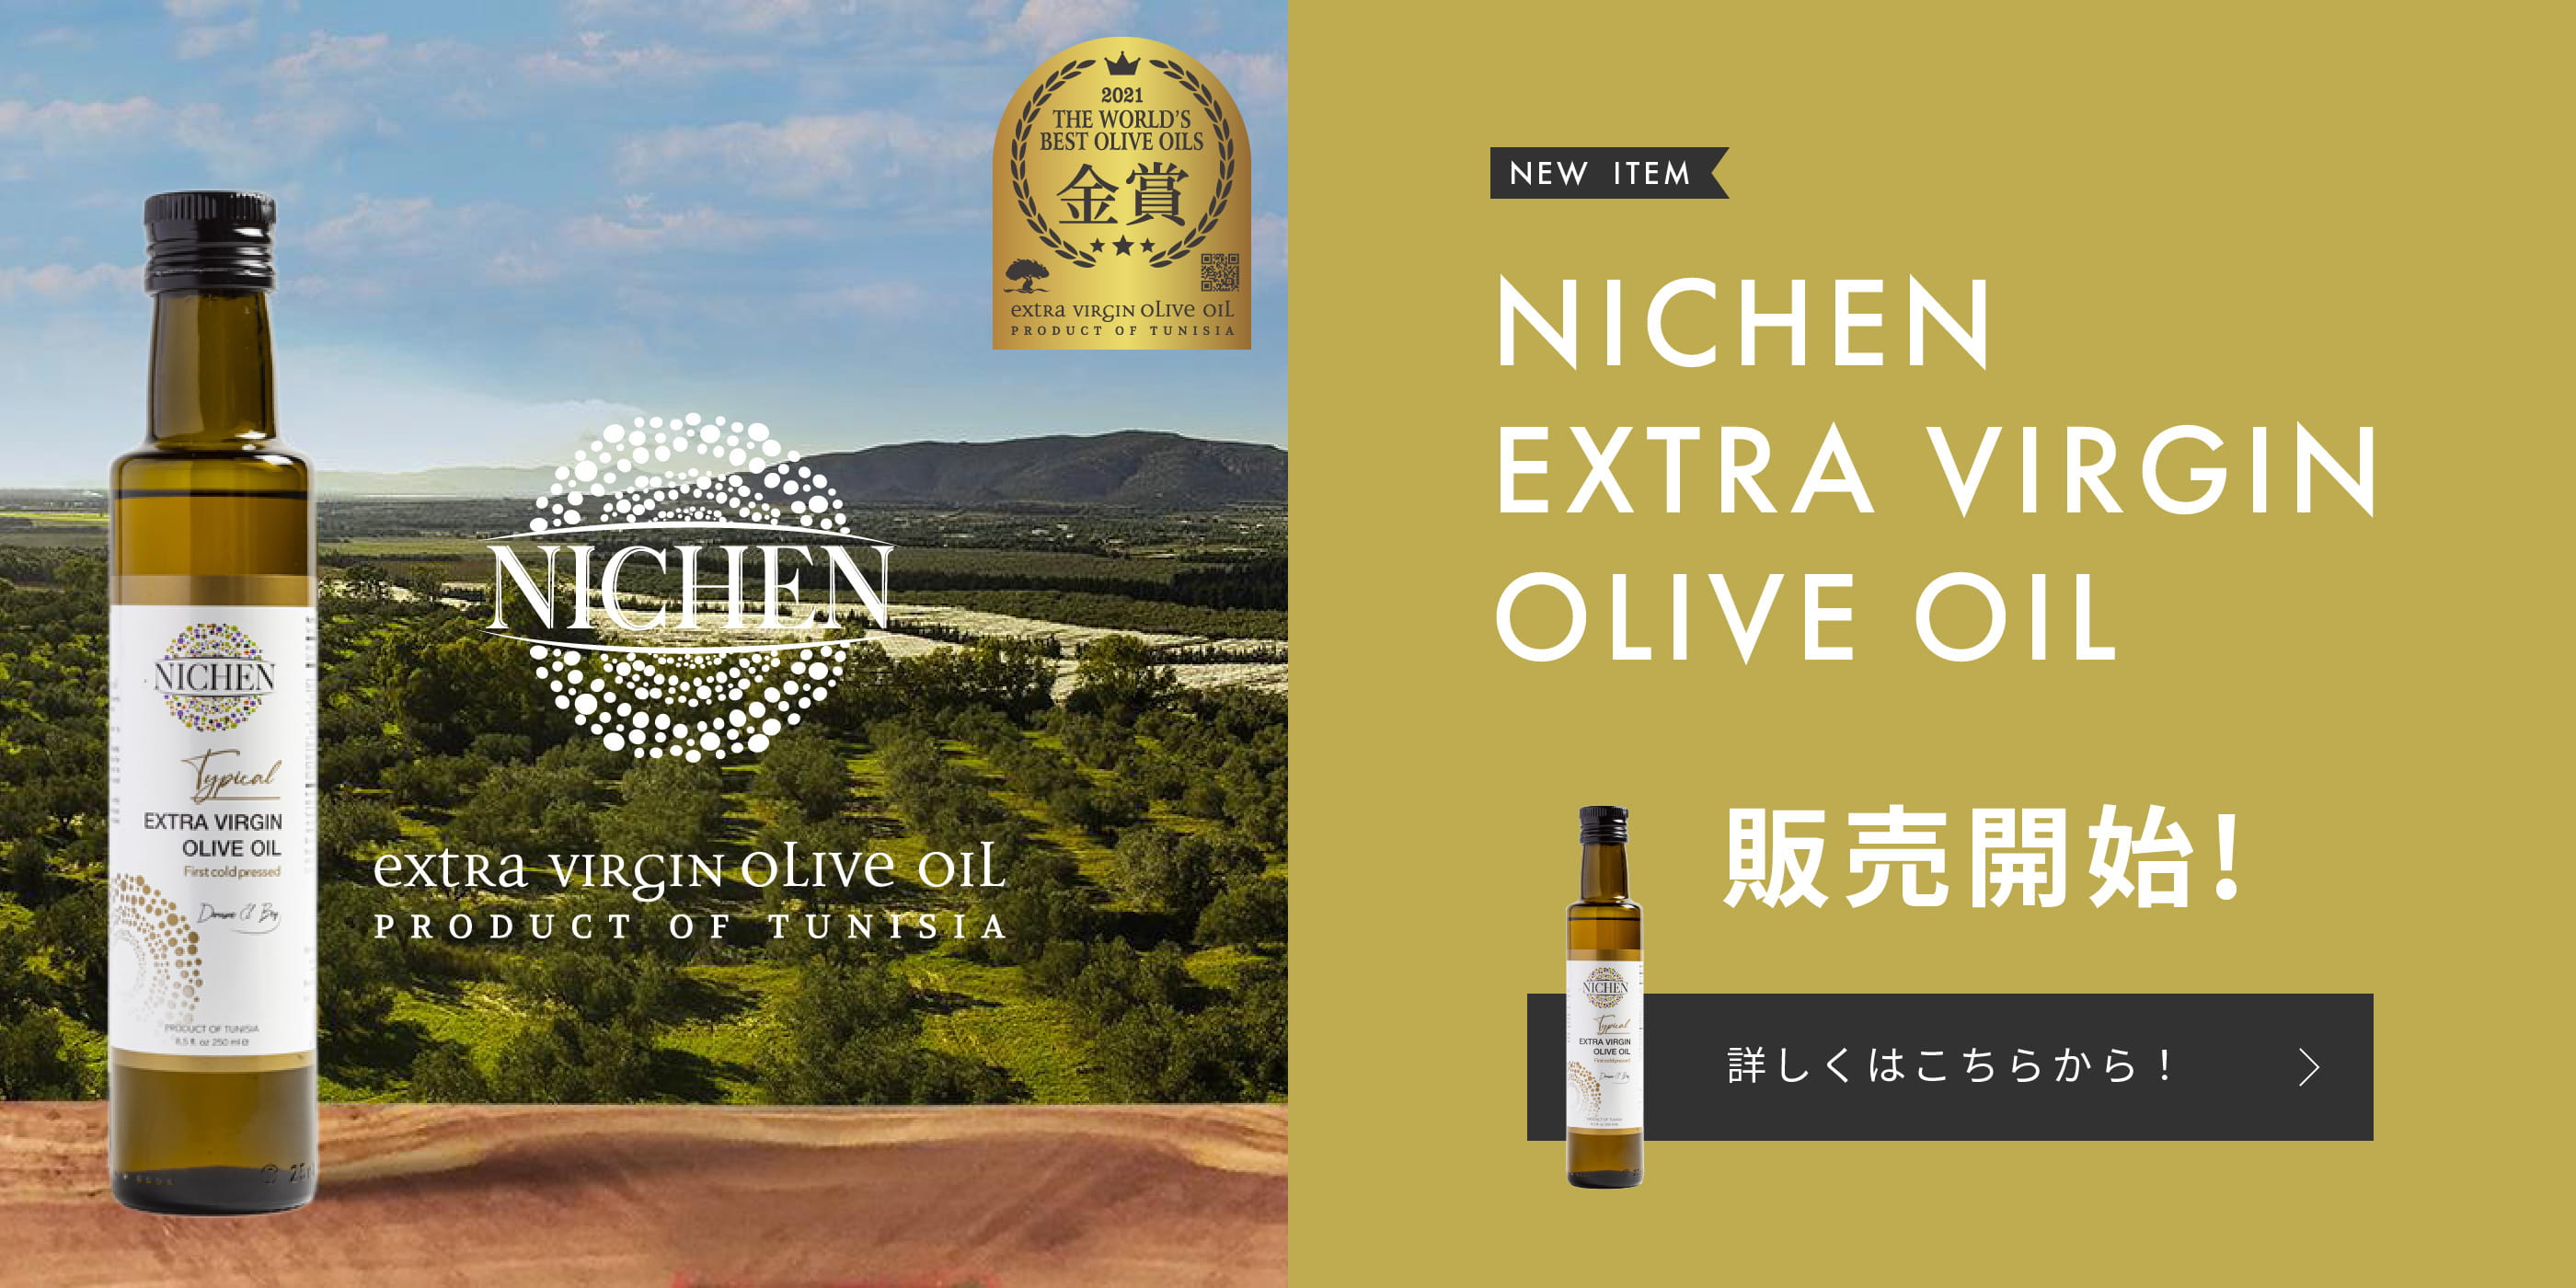 NEW ITEM EXTRA VIRGIN OLIVE OIL 販売開始! 詳しくはこちらから！